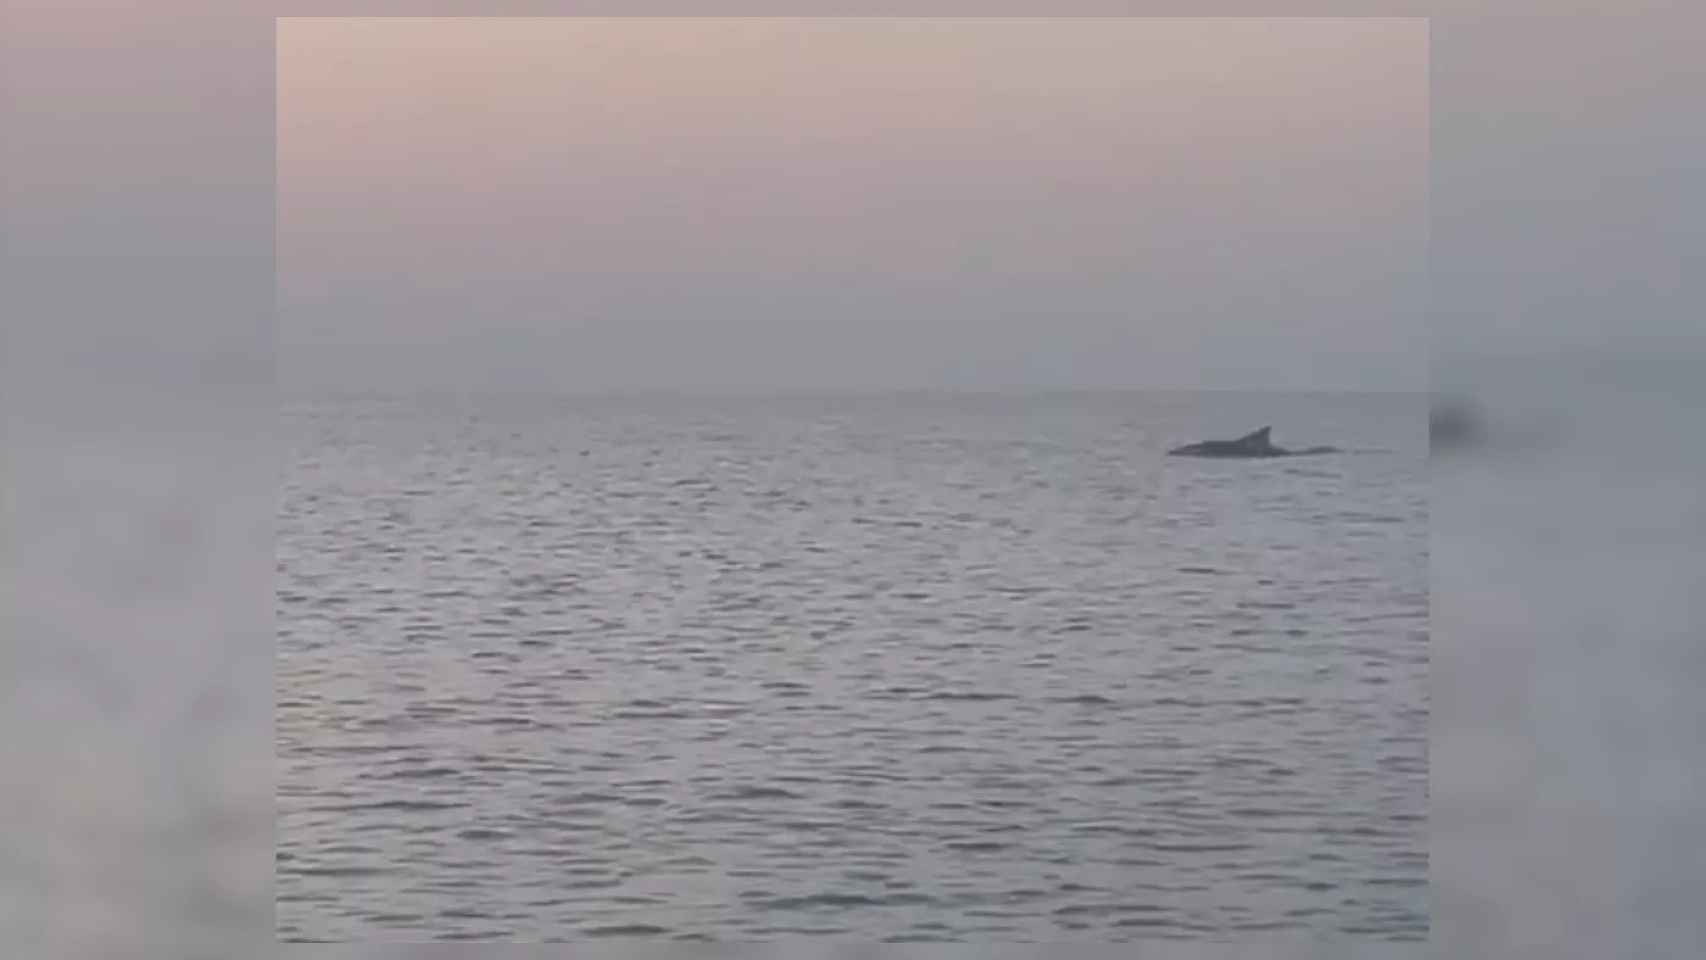 Un delfín nada en la playa de Badalona / ESPAI MAR